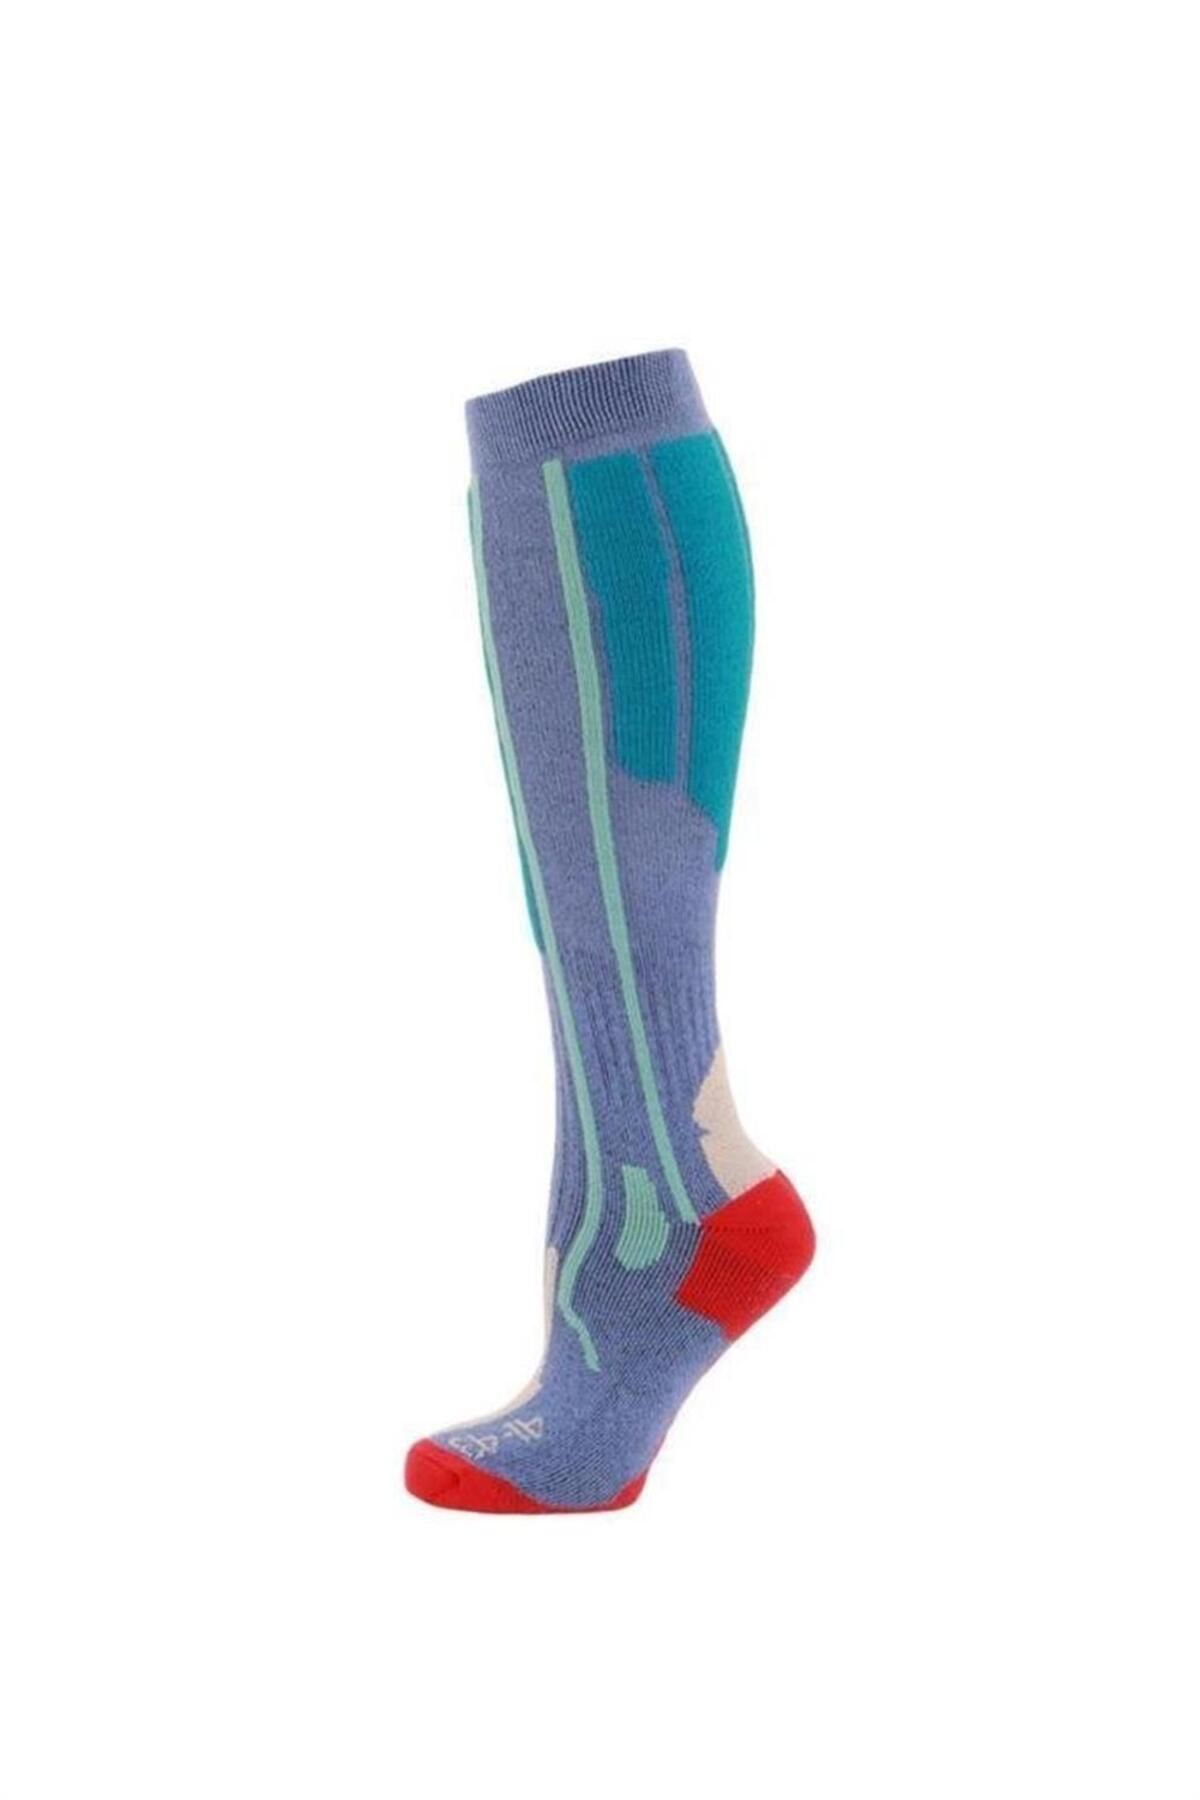 Panthzer Ski Socks Erkek Kayak Çorap Mavi/yeşil